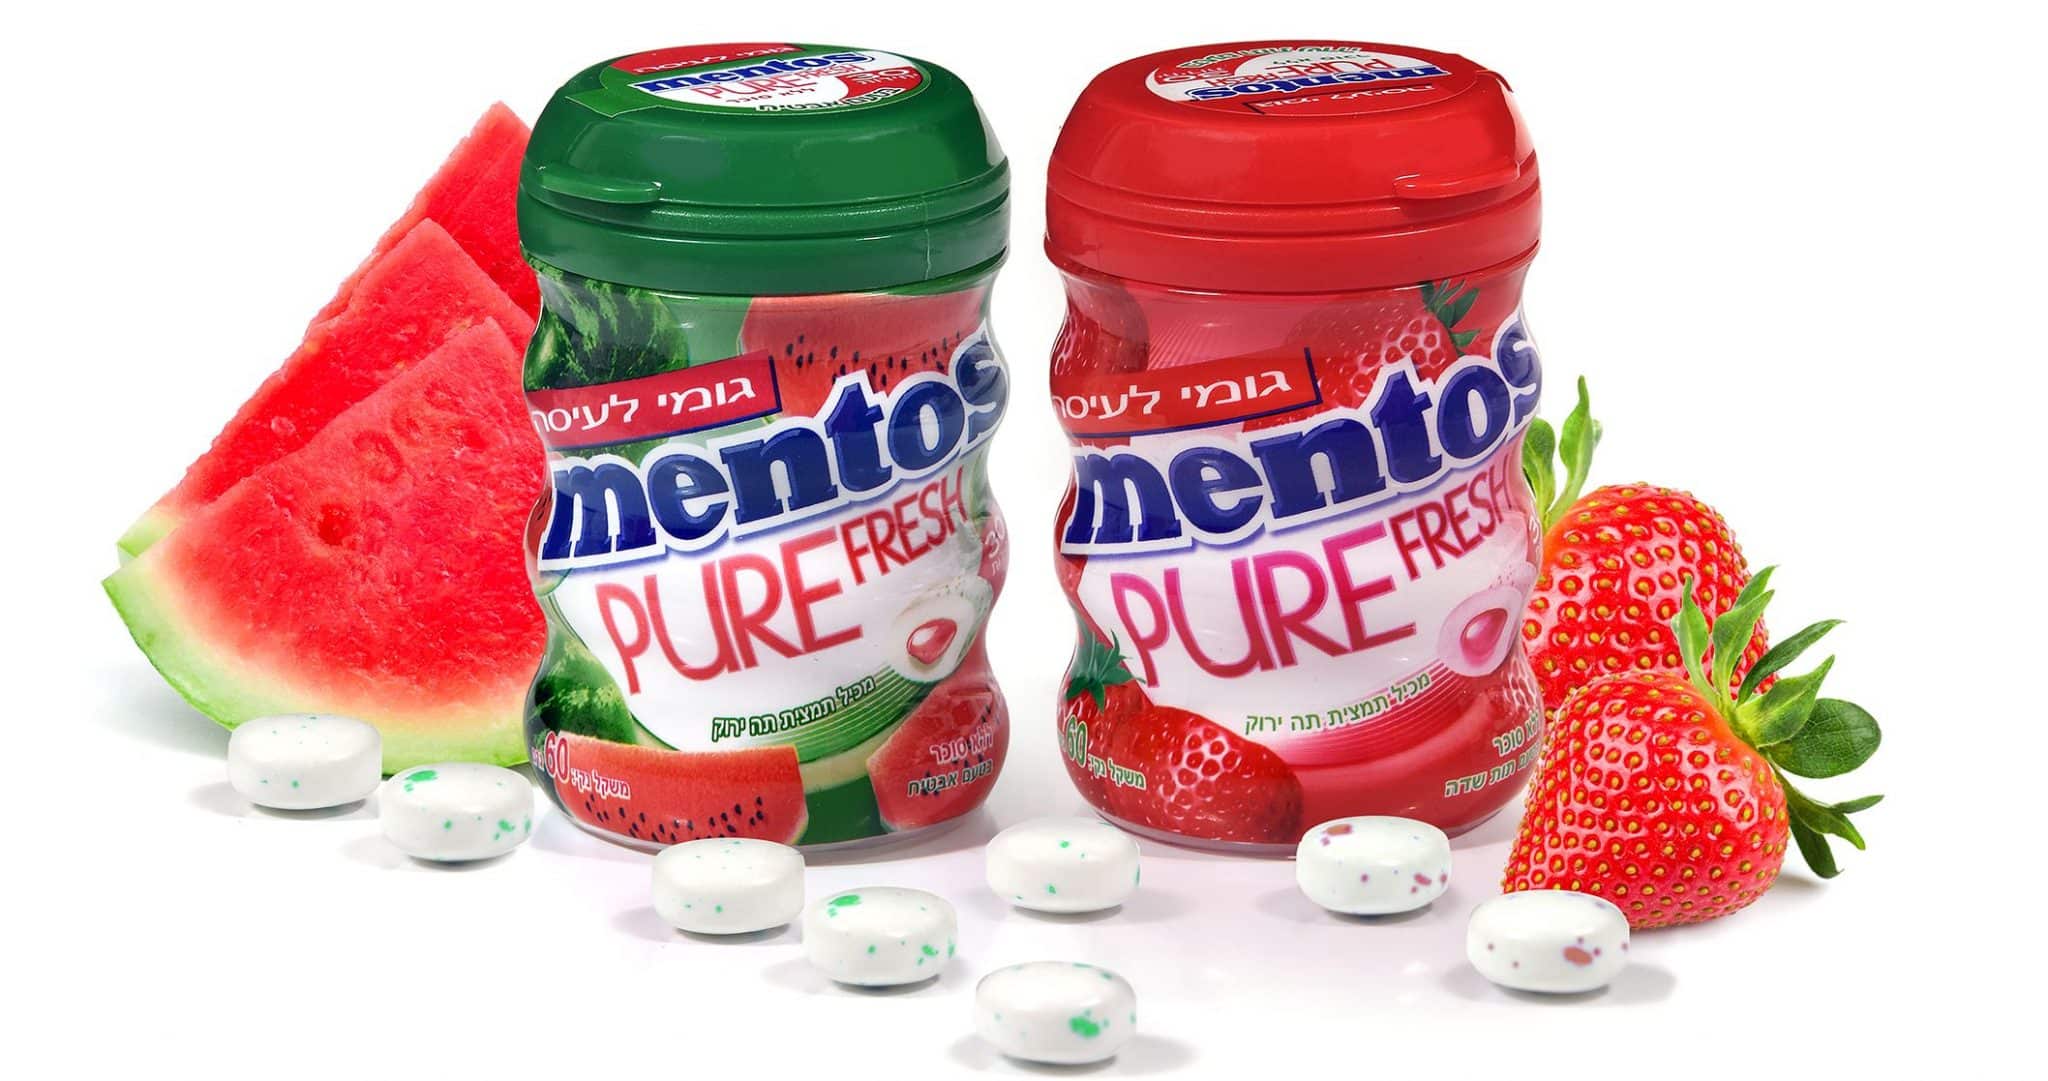 אריזות הבקבוקים של מסטיק Mentos Pure Fresh נוחות ומותאמות לפתיחה קלה ונוחה. צילום אפרת אשל